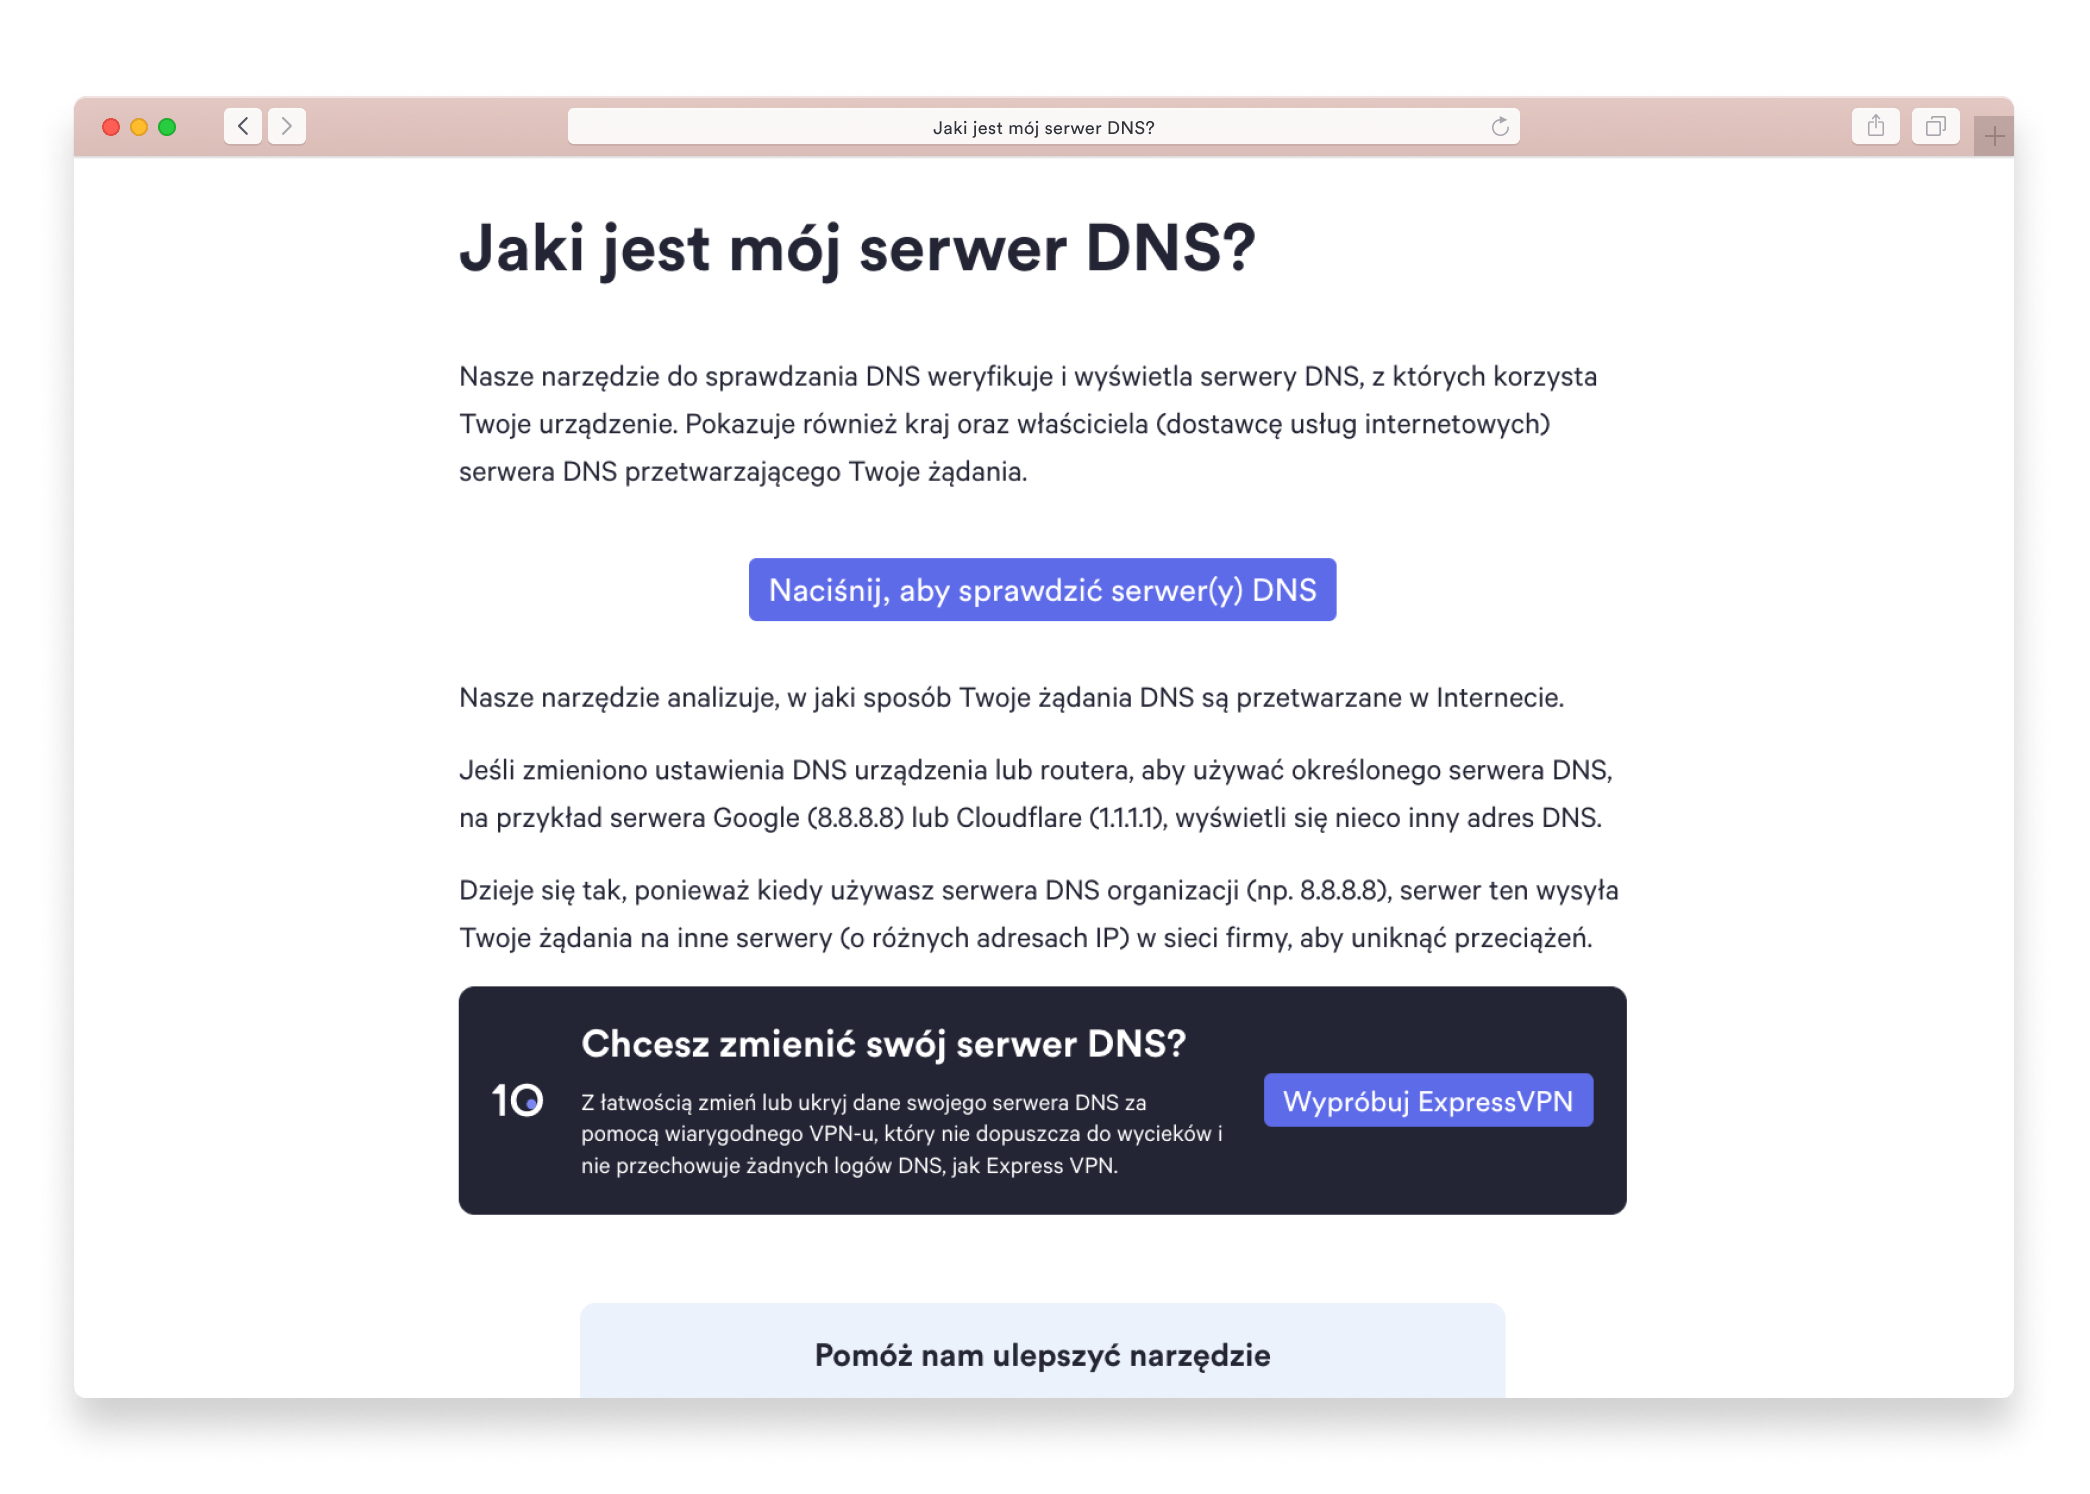 Jaki jest mój serwer DNS?